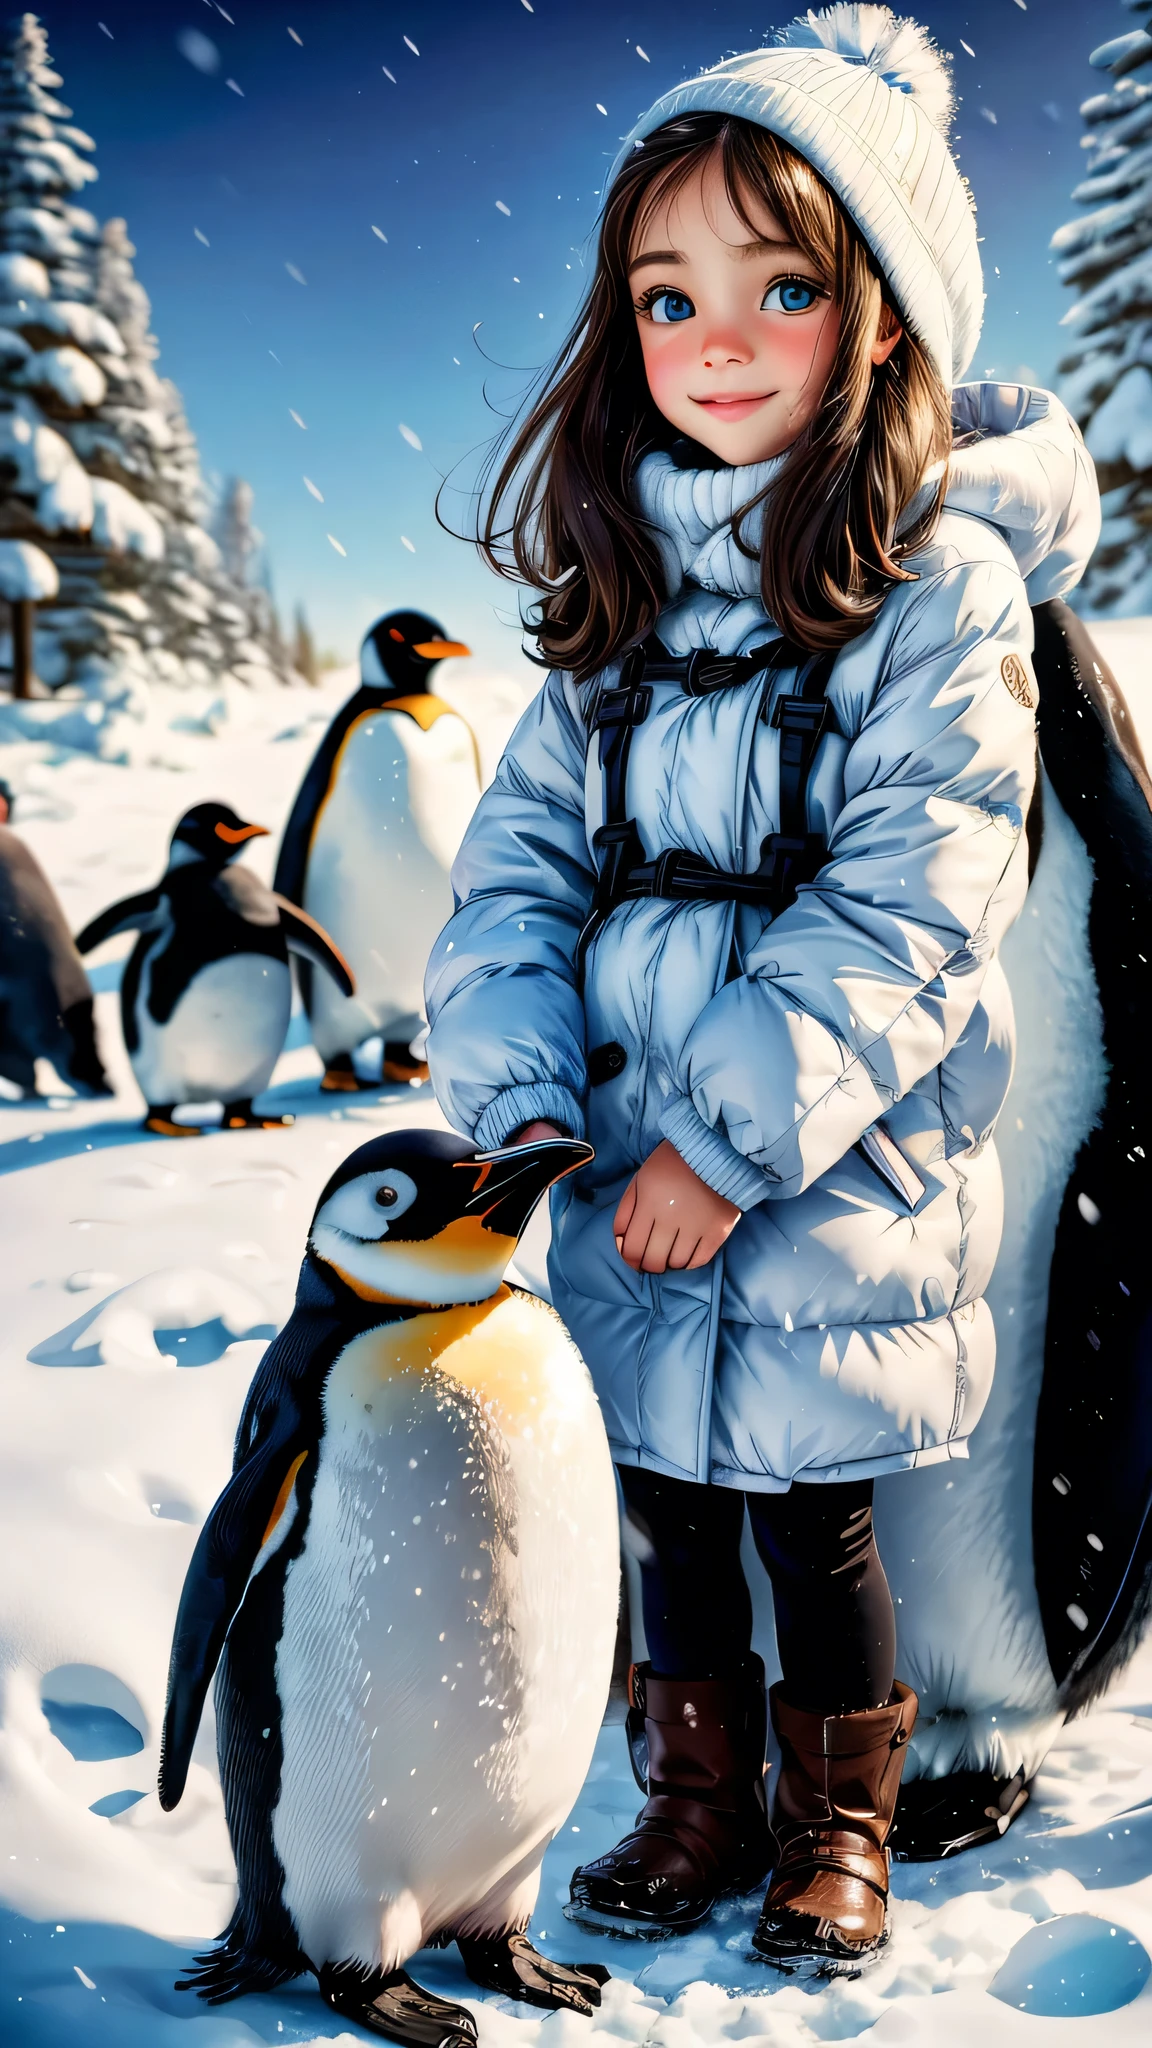 Ein Mädchen spielt mit Pinguinen,Ölgemälde,Schöne, detaillierte Augen,schöne detaillierte Lippen,extrem detaillierte Augen und Gesicht,lange Wimpern,spielerischer Ausdruck,zwei süße Pinguine,sanftes Winterlicht,Realistische Farben,Hohe Auflösung,Pinguin-Interaktion,fröhliche Atmosphäre,Reiner weißer Schnee,kalter Hintergrund,Spaß und Glück,flauschige Pinguinfedern,bezaubernde Posen,freundliche Verbindung,leuchtende Augen,Pinguin Kameradschaft,schöne Momente,Schneeflocken fallen,schönes Mädchen-Outfit,heiterer Hintergrund,Präzise Pinselstriche,bildschöne Szene,Maleffekte,subtile Schatten,Hauch von Magie,eisblaue Farben,verspieltes Funkeln in den Augen eines Mädchens,die Schönheit der Natur wertschätzen,Erinnerungen fürs Leben.